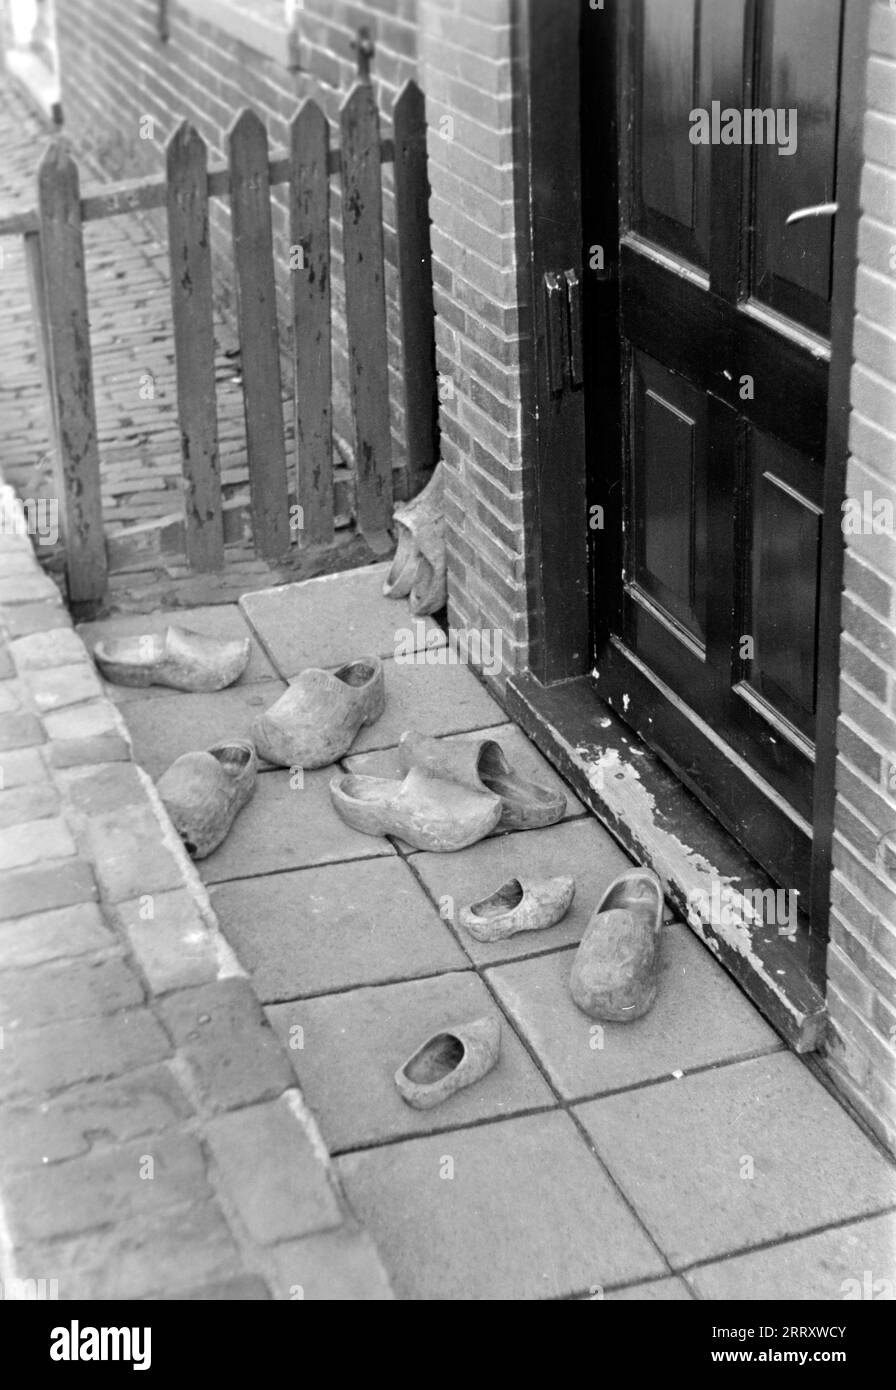 Niederländische Holzpantoffeln, genannt Klompen, liegen in einer Rinne vor der Haustür, Volendam 1941. Dutch wooden slippers, called klompen, lying in a gutter in front of the front door, Volendam 1941. Stock Photo